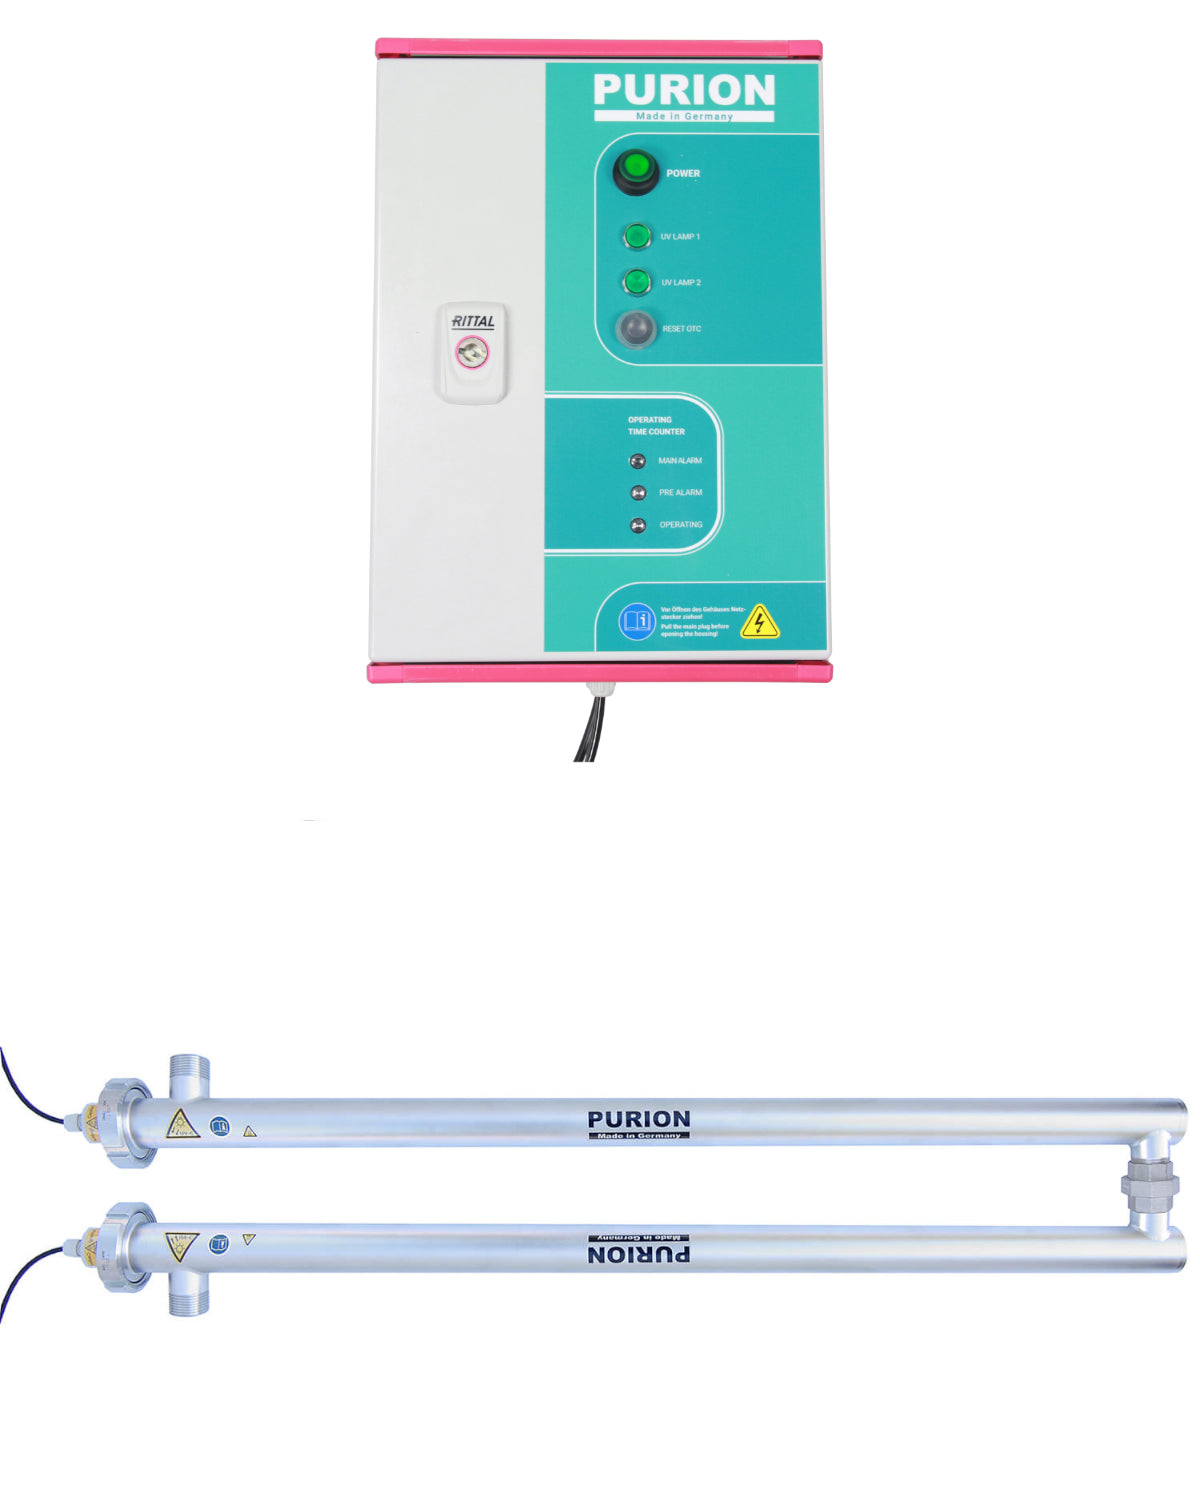 Der PURION 2500 36 W DUAL OTC, hergestellt von der PURION GmbH, ist ein Gerät mit blauem und rosafarbenem Licht, das die UV-C-Desinfektionstechnologie zur Desinfektion von Trinkwasser nutzt.